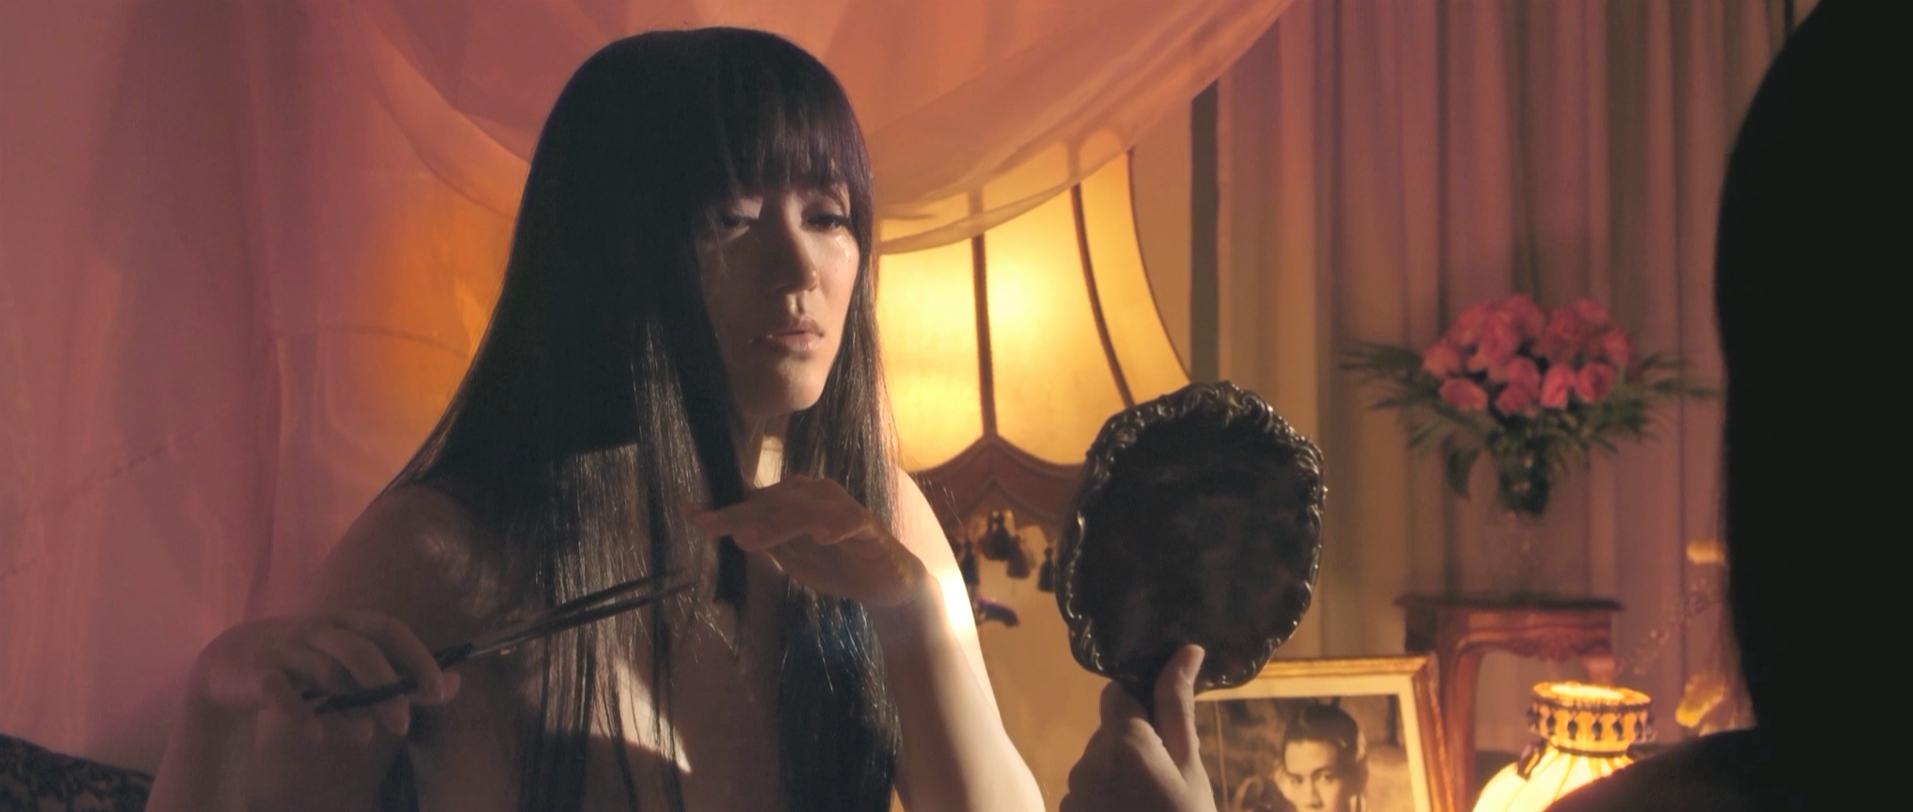 Jan Dara: The Finale (2013) Screenshot 5